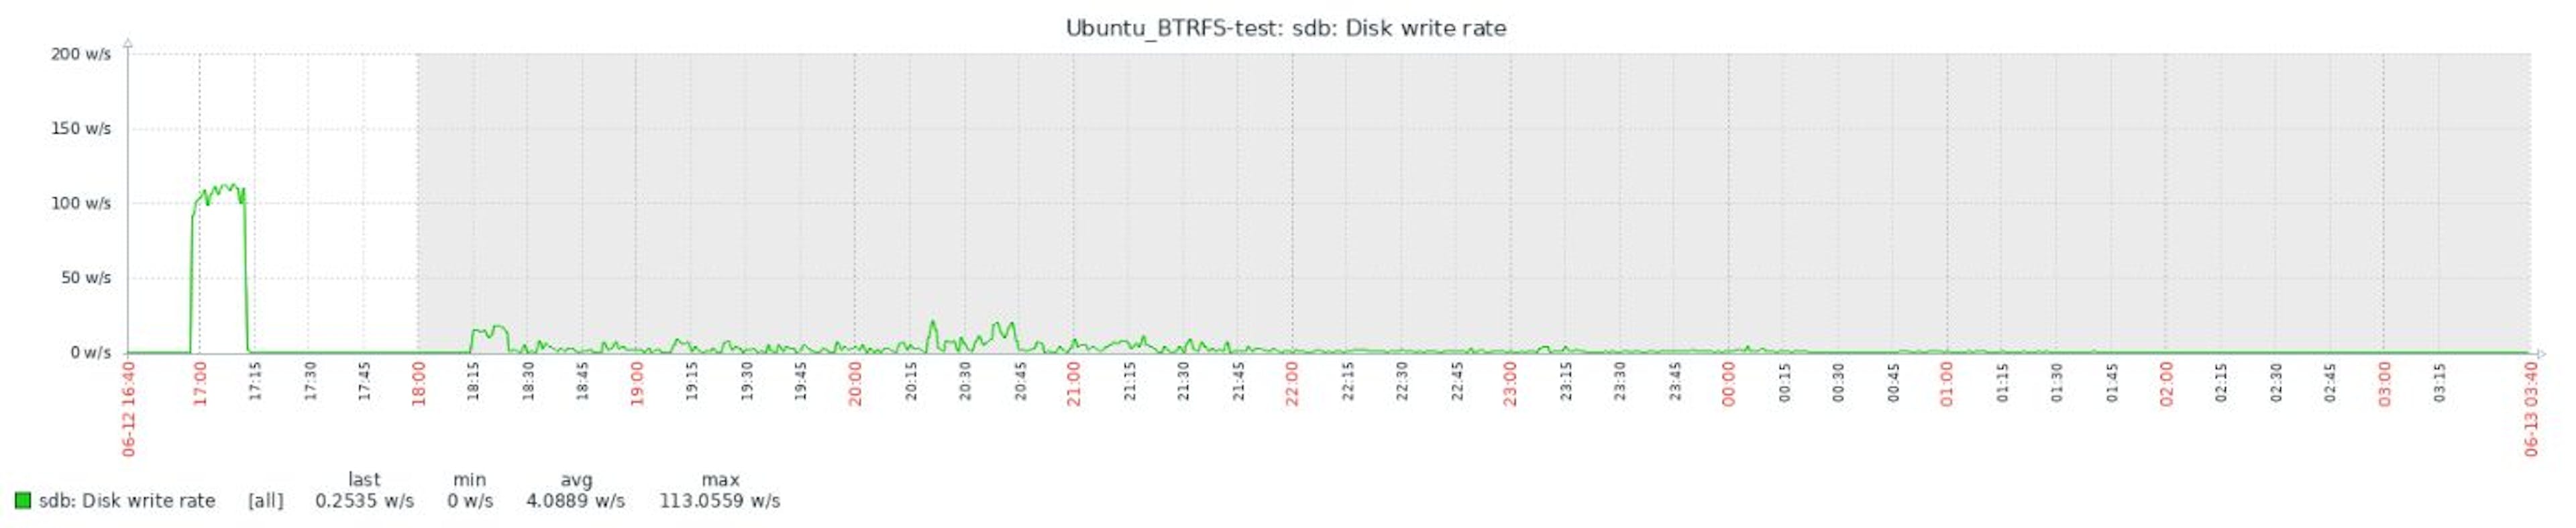 2.7.4 BTRFS Disk write rate full